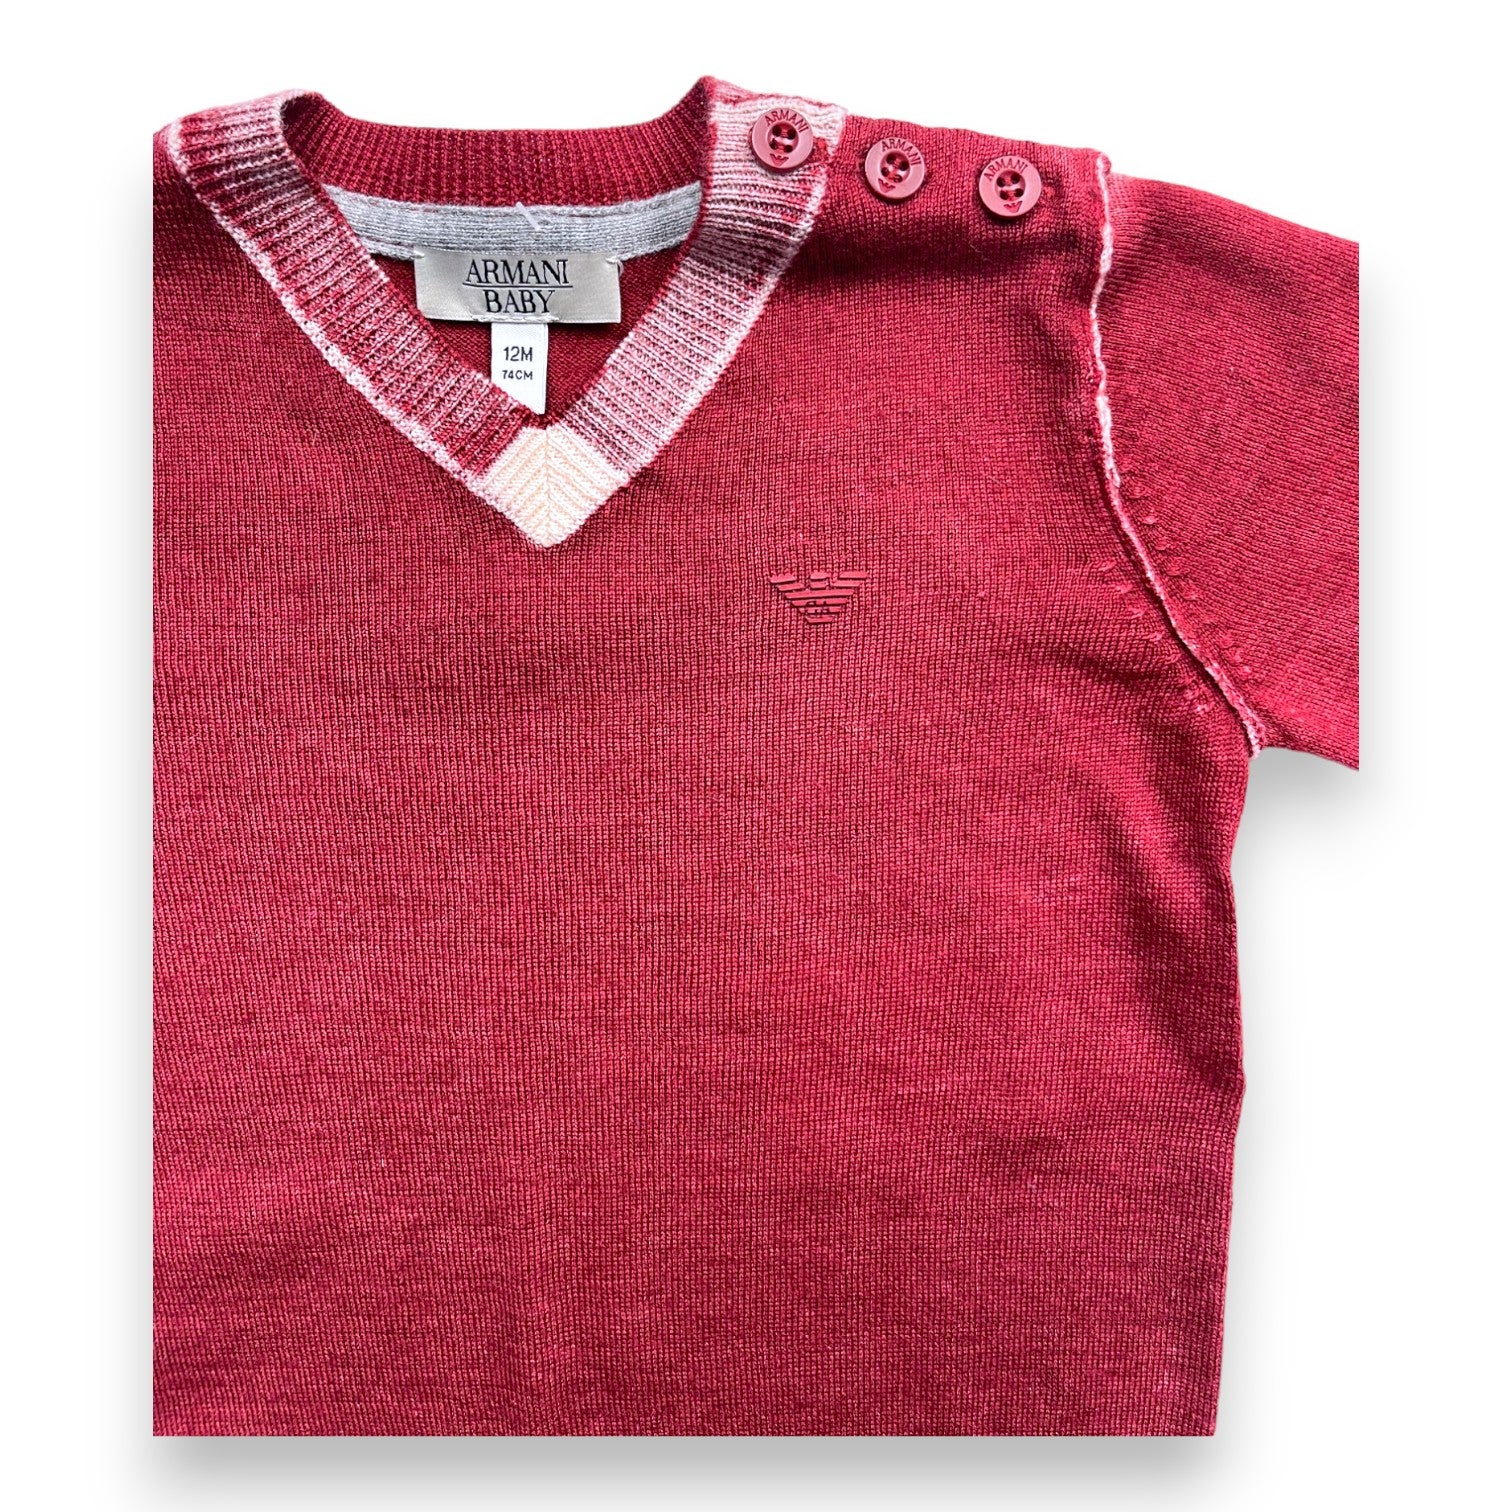 ARMANI BABY - Pull col V en laine rouge et blanc (neuf) - 12 mois